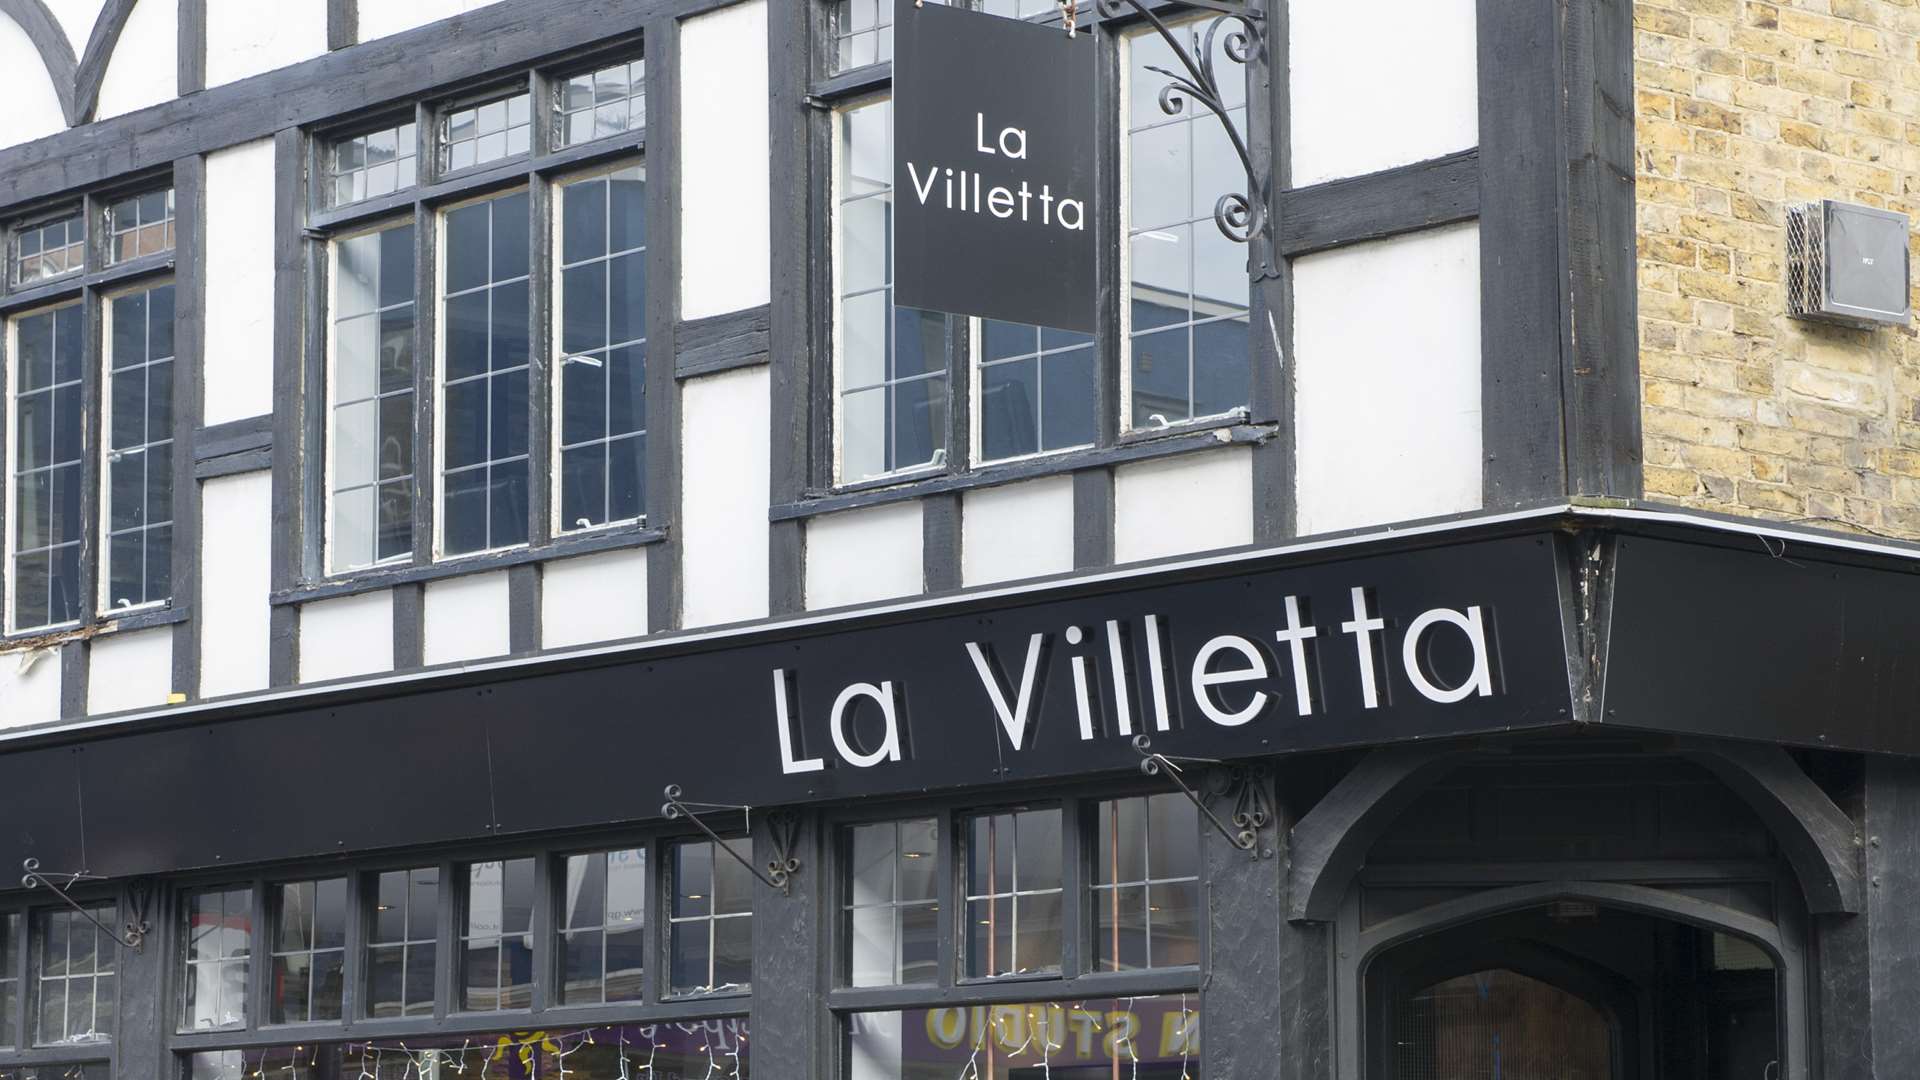 Italian restaurant La Villetta in Pudding Lane, Maidstone